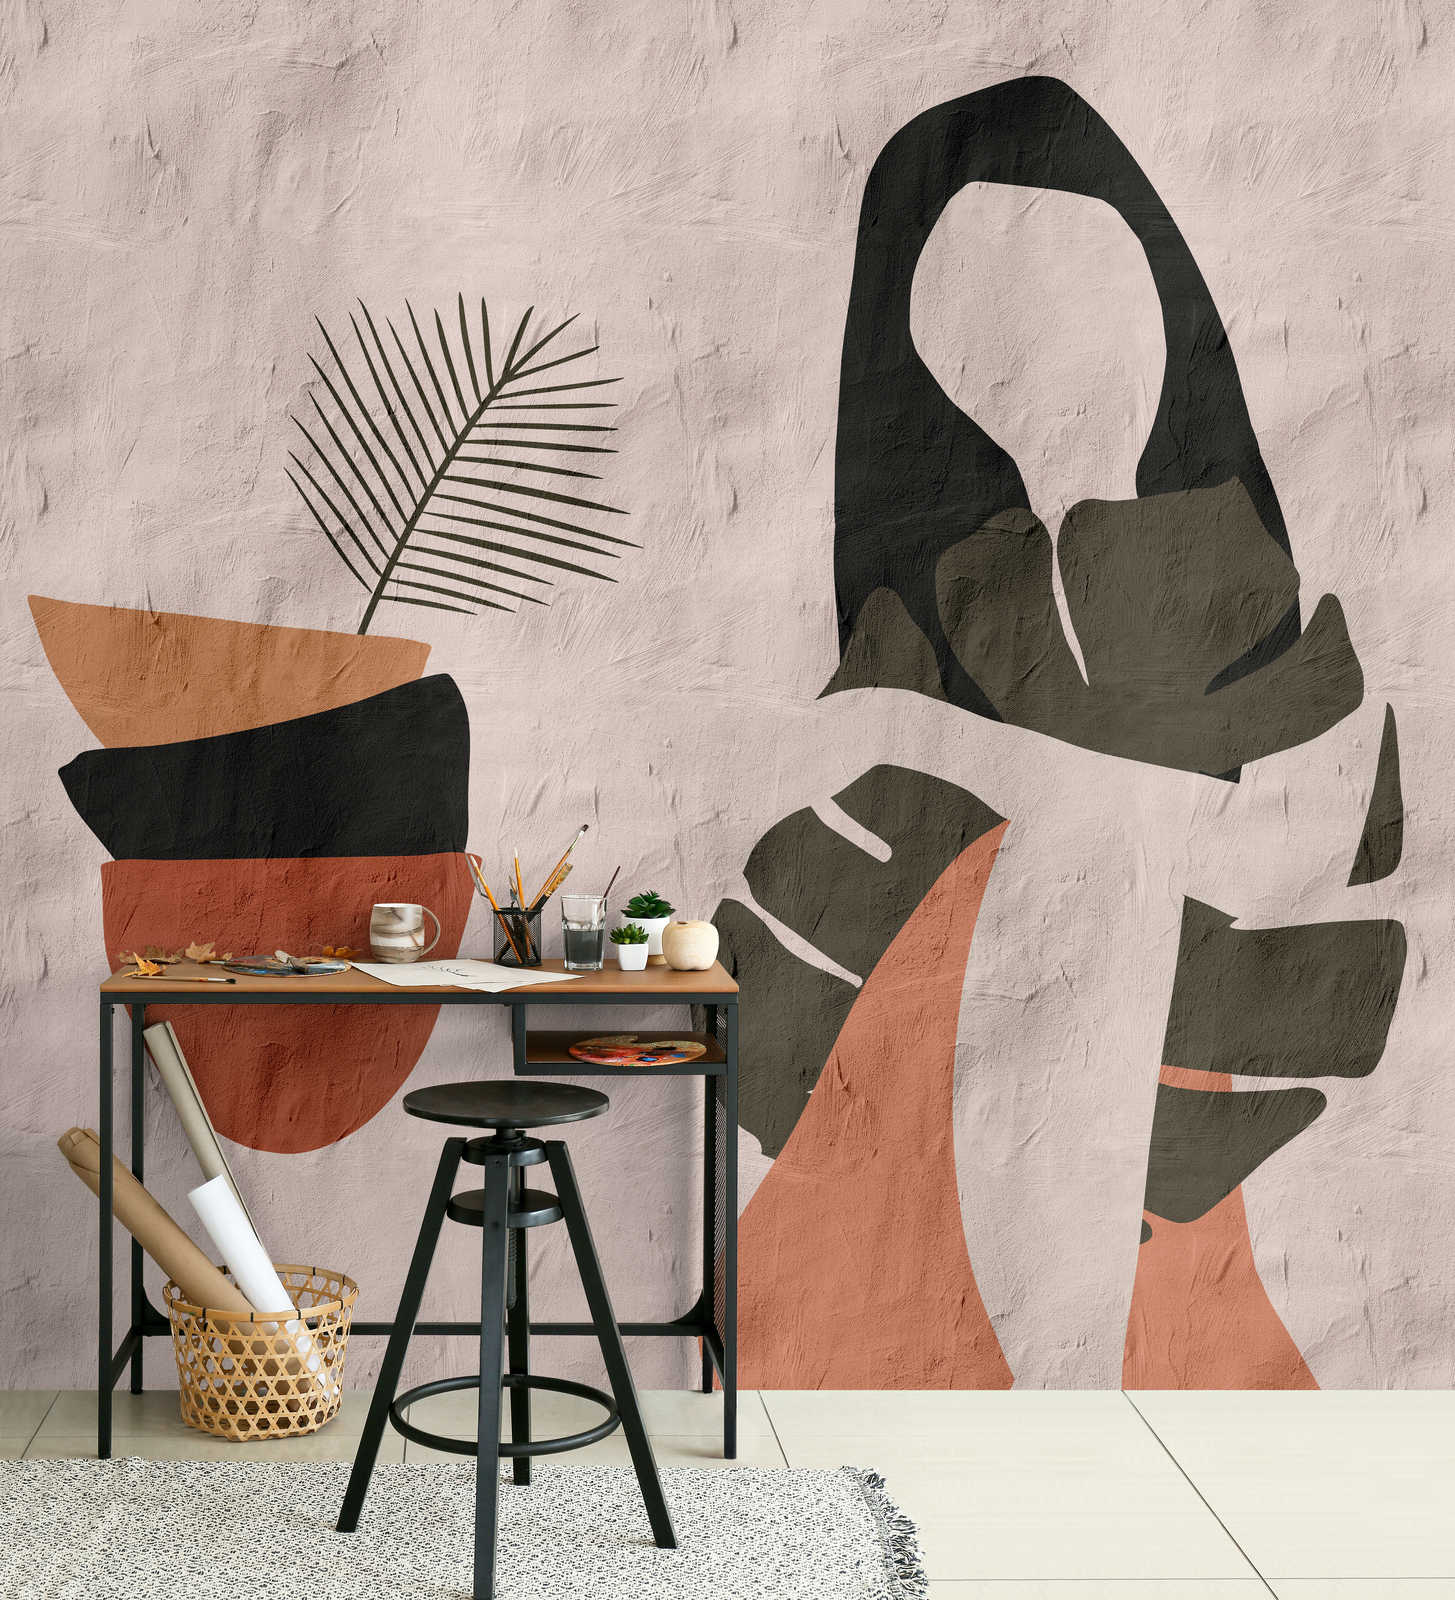             Santa Fe 1 - Clay Wallpaper Beige met Ethno Design
        